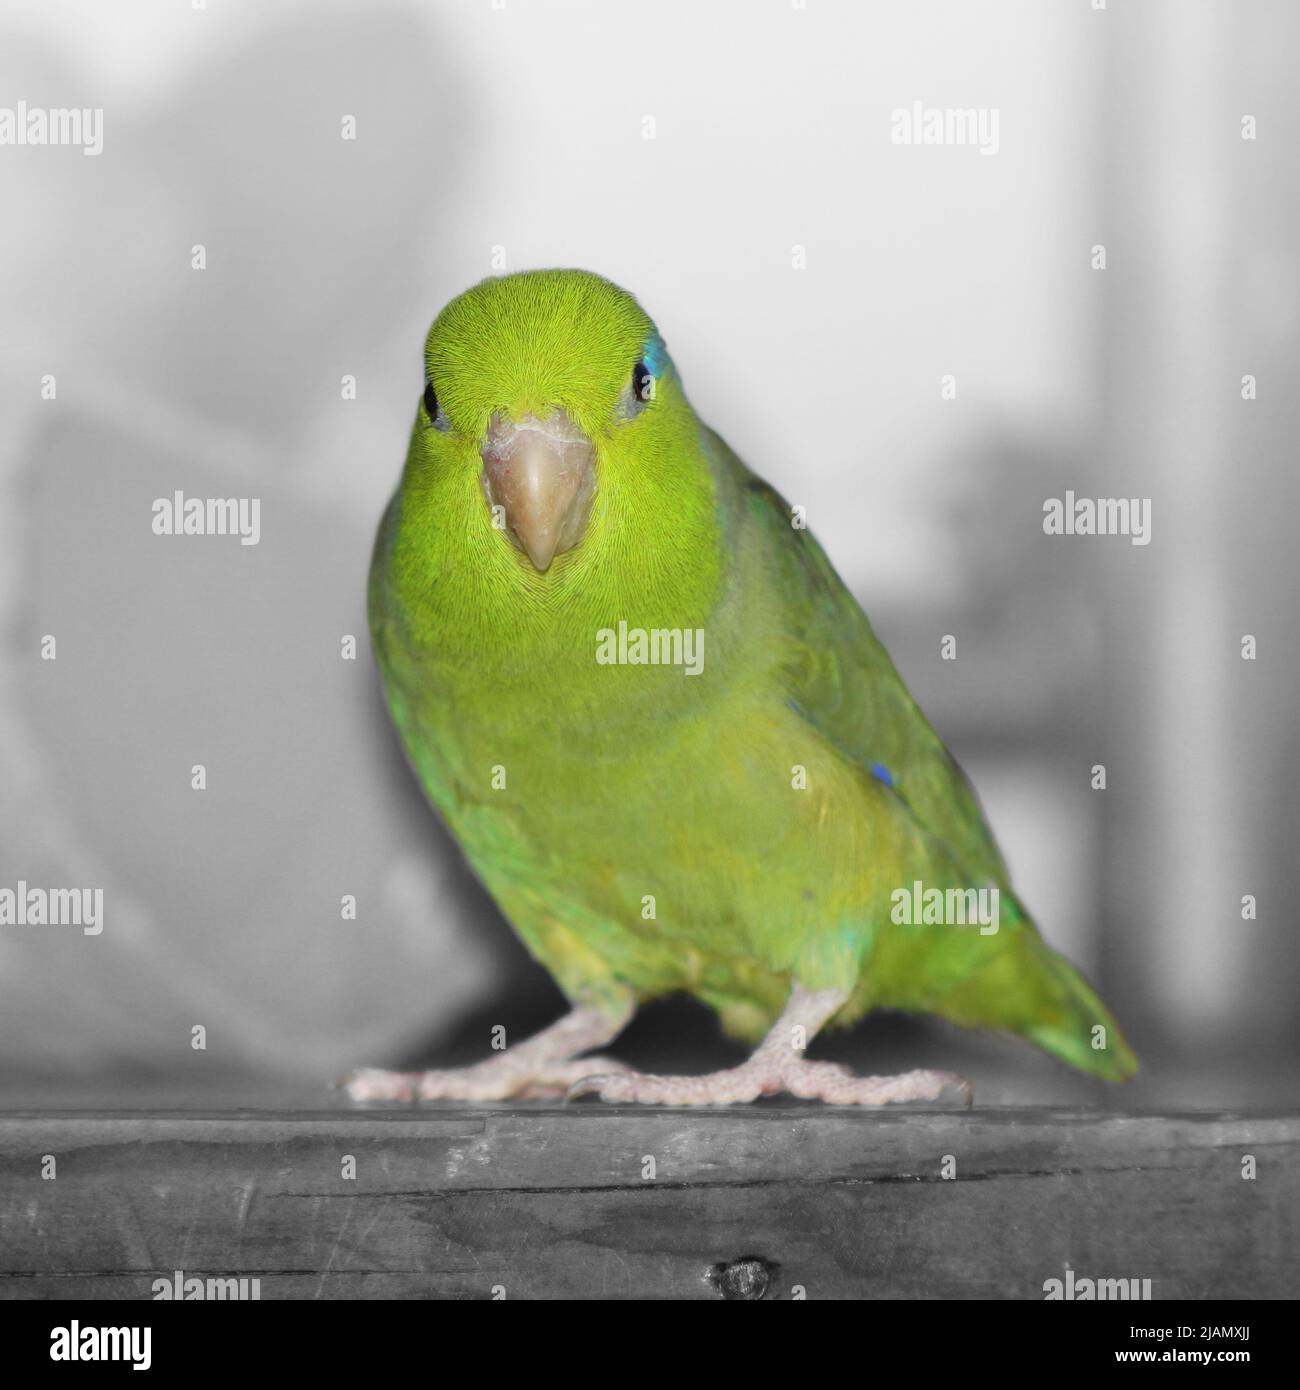 Un parrotlet verde del pacífico sentado en un estante de madera. El fondo es negro y blanco, por lo que el pájaro verde destaca Foto de stock